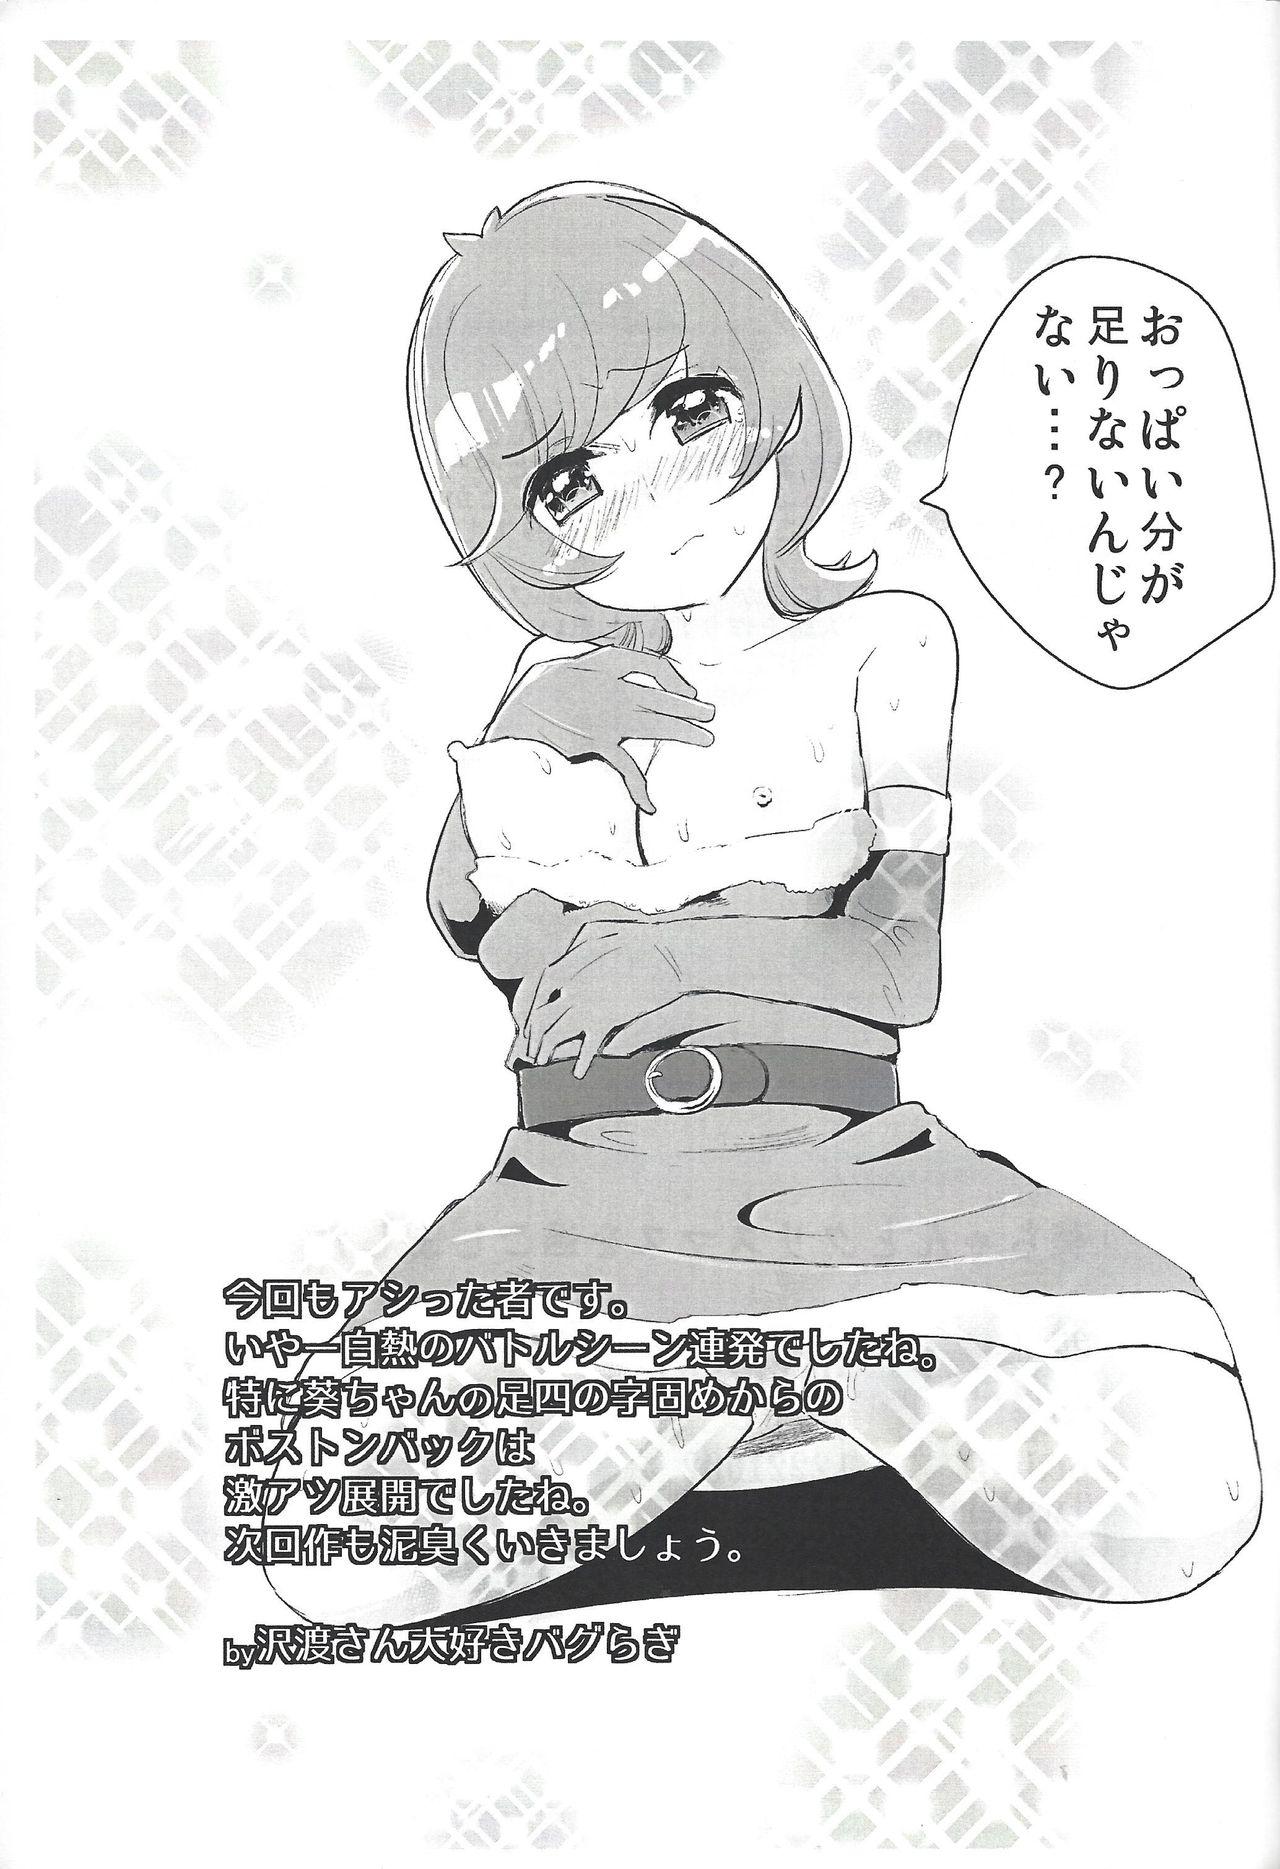 Toes Aoi-chan to Christmas o Sugoshimashita - Yu-gi-oh vrains Bro - Page 12